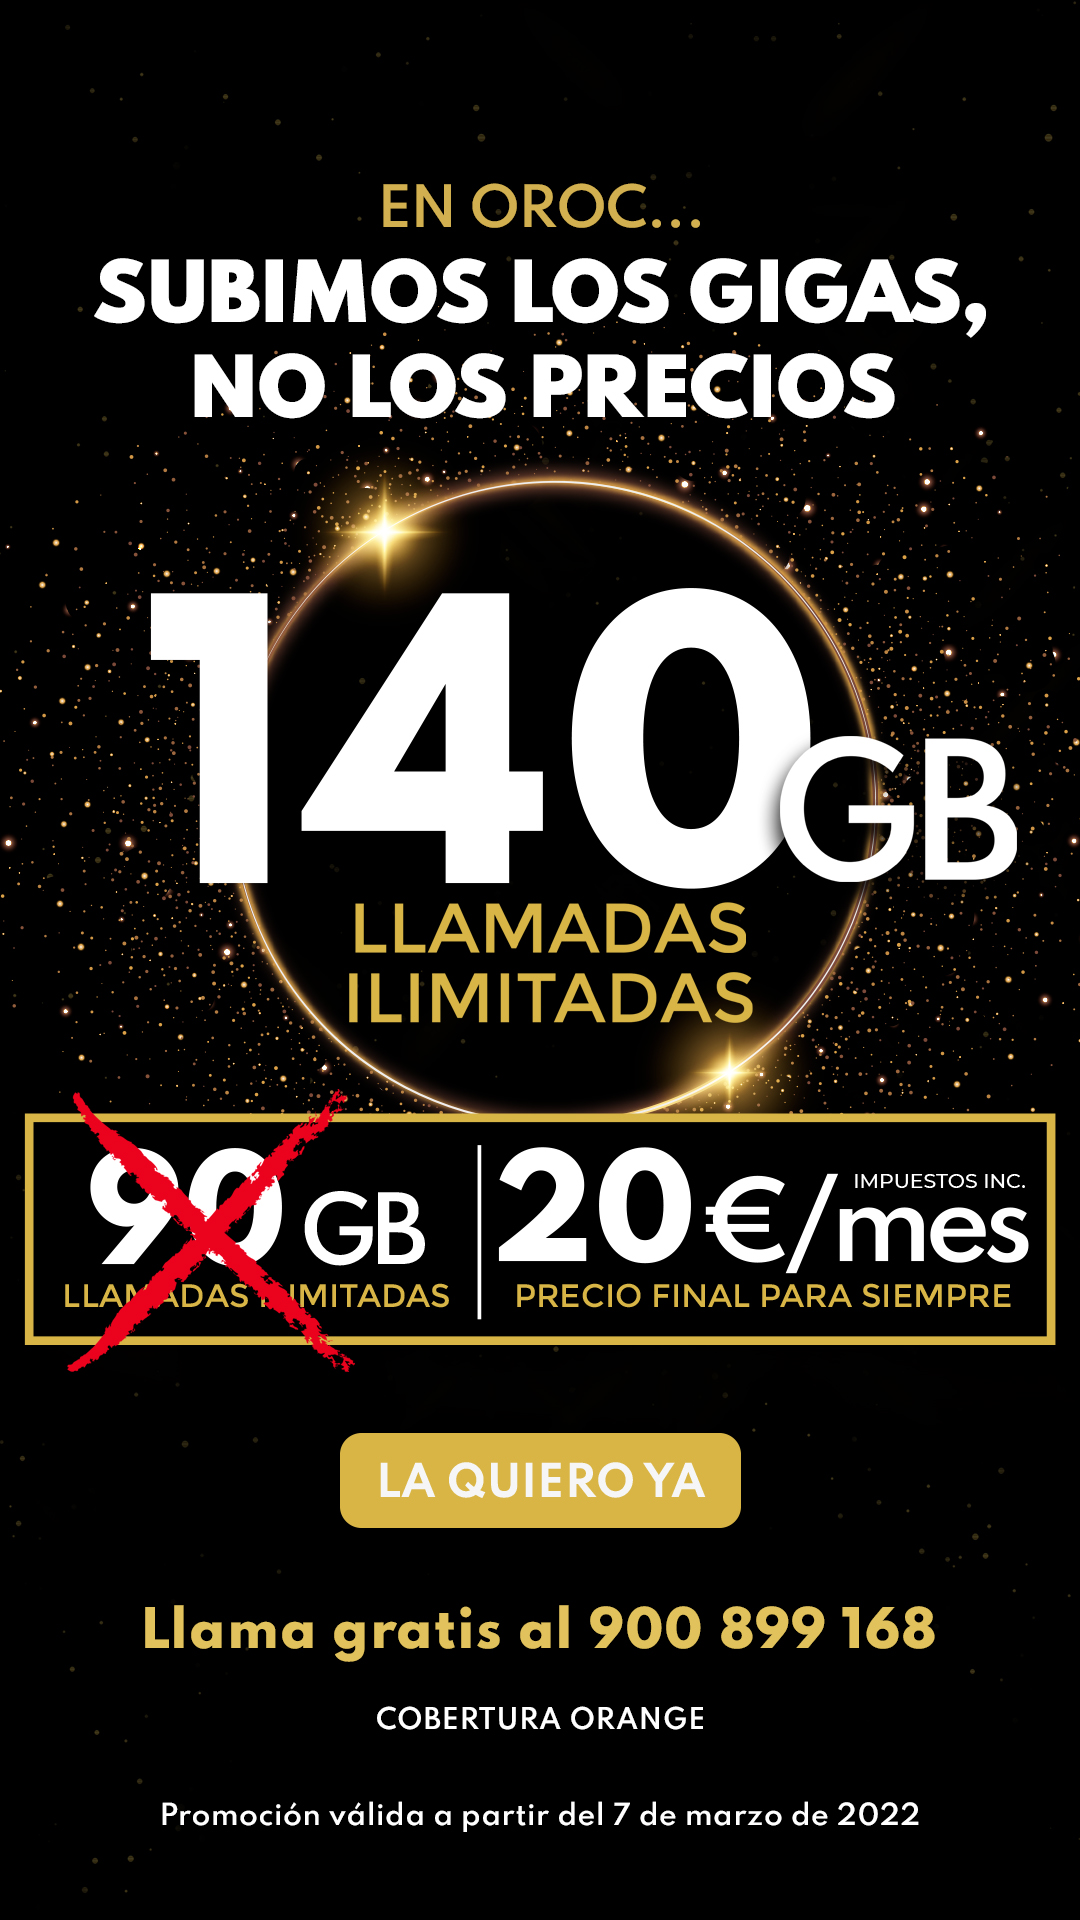 Oferta tarifa móvil 140GB + Llamadas ilimitadas